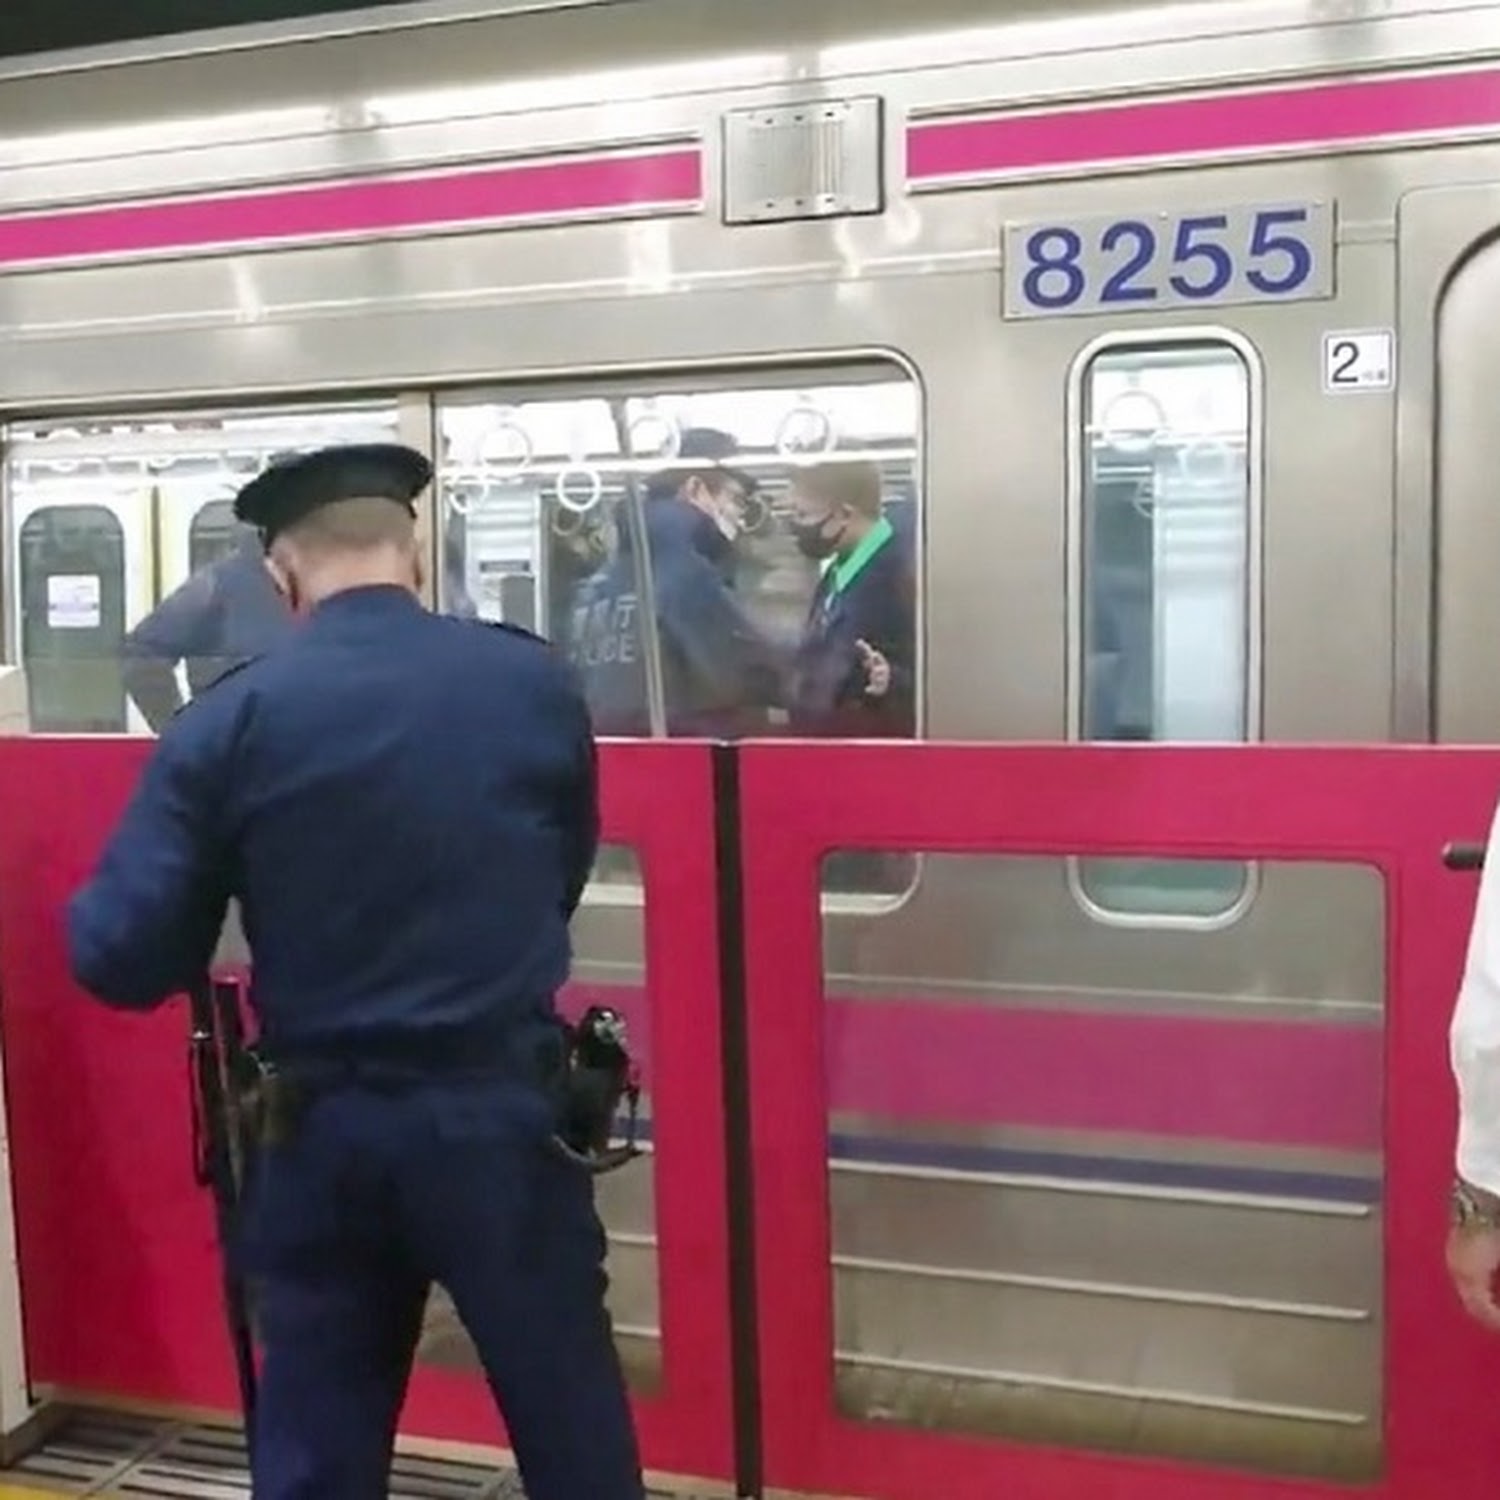 Man Dressed as Joker Injures 17 on Tokyo Train